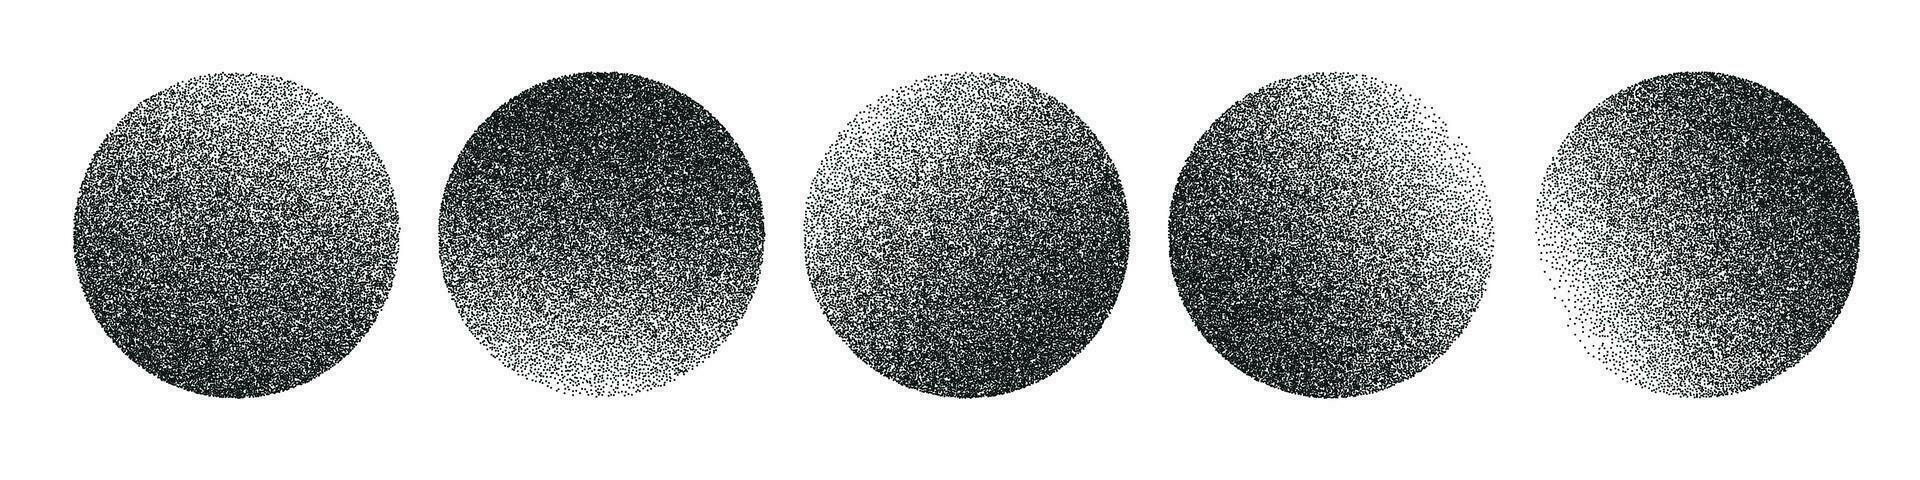 circulaire forme avec granuleux texture, dégradés et nuances. le pointillé et vaporisateur demi-teinte effet, profondeur et ombre. plat vecteur illustration isolé sur blanc Contexte.